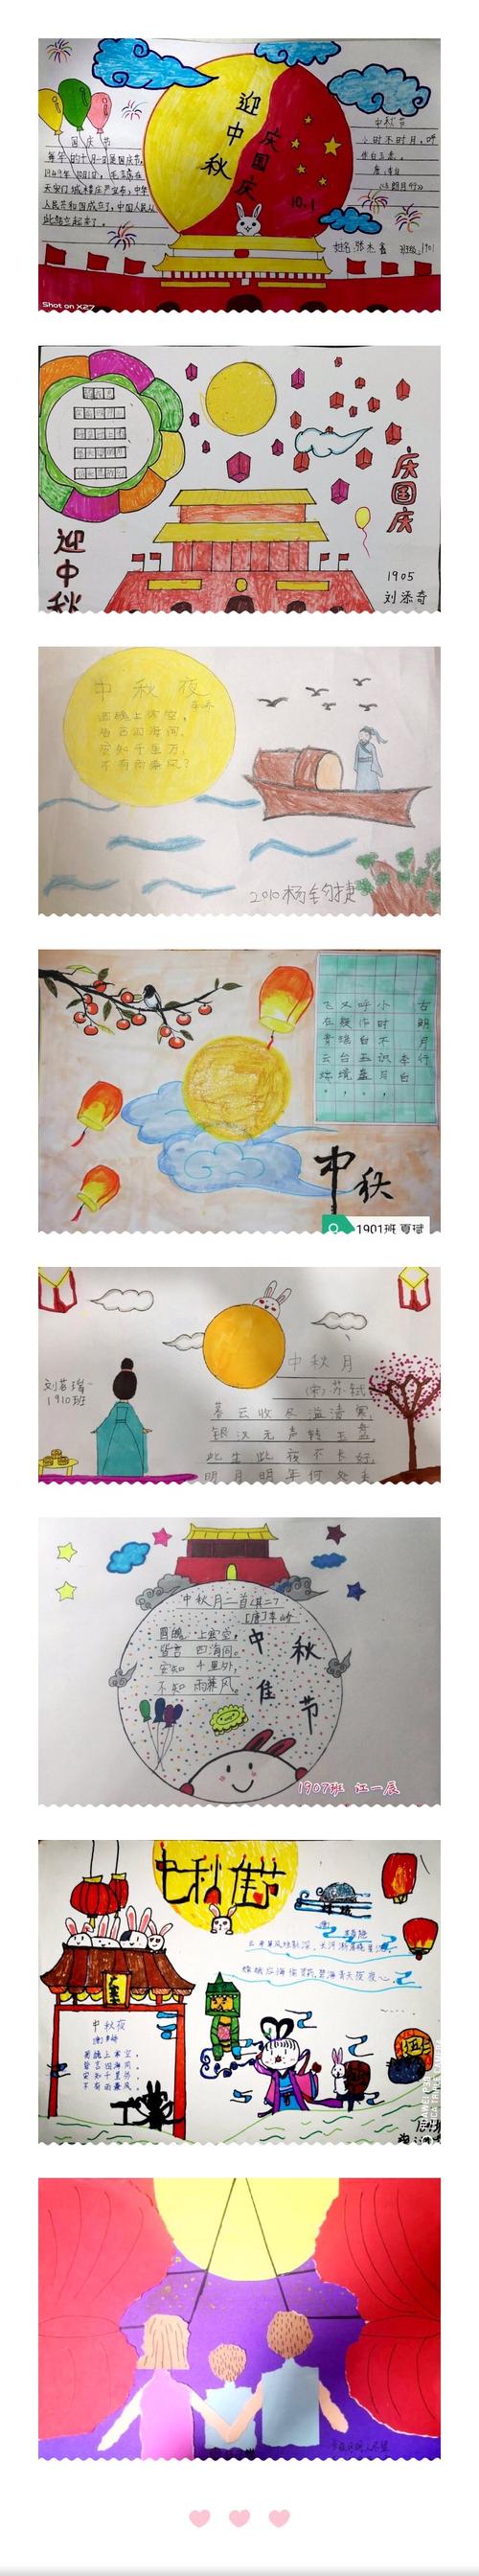 美篇本次主题活动的开展,让孩子们更深入地了解了中秋节这一传统节日